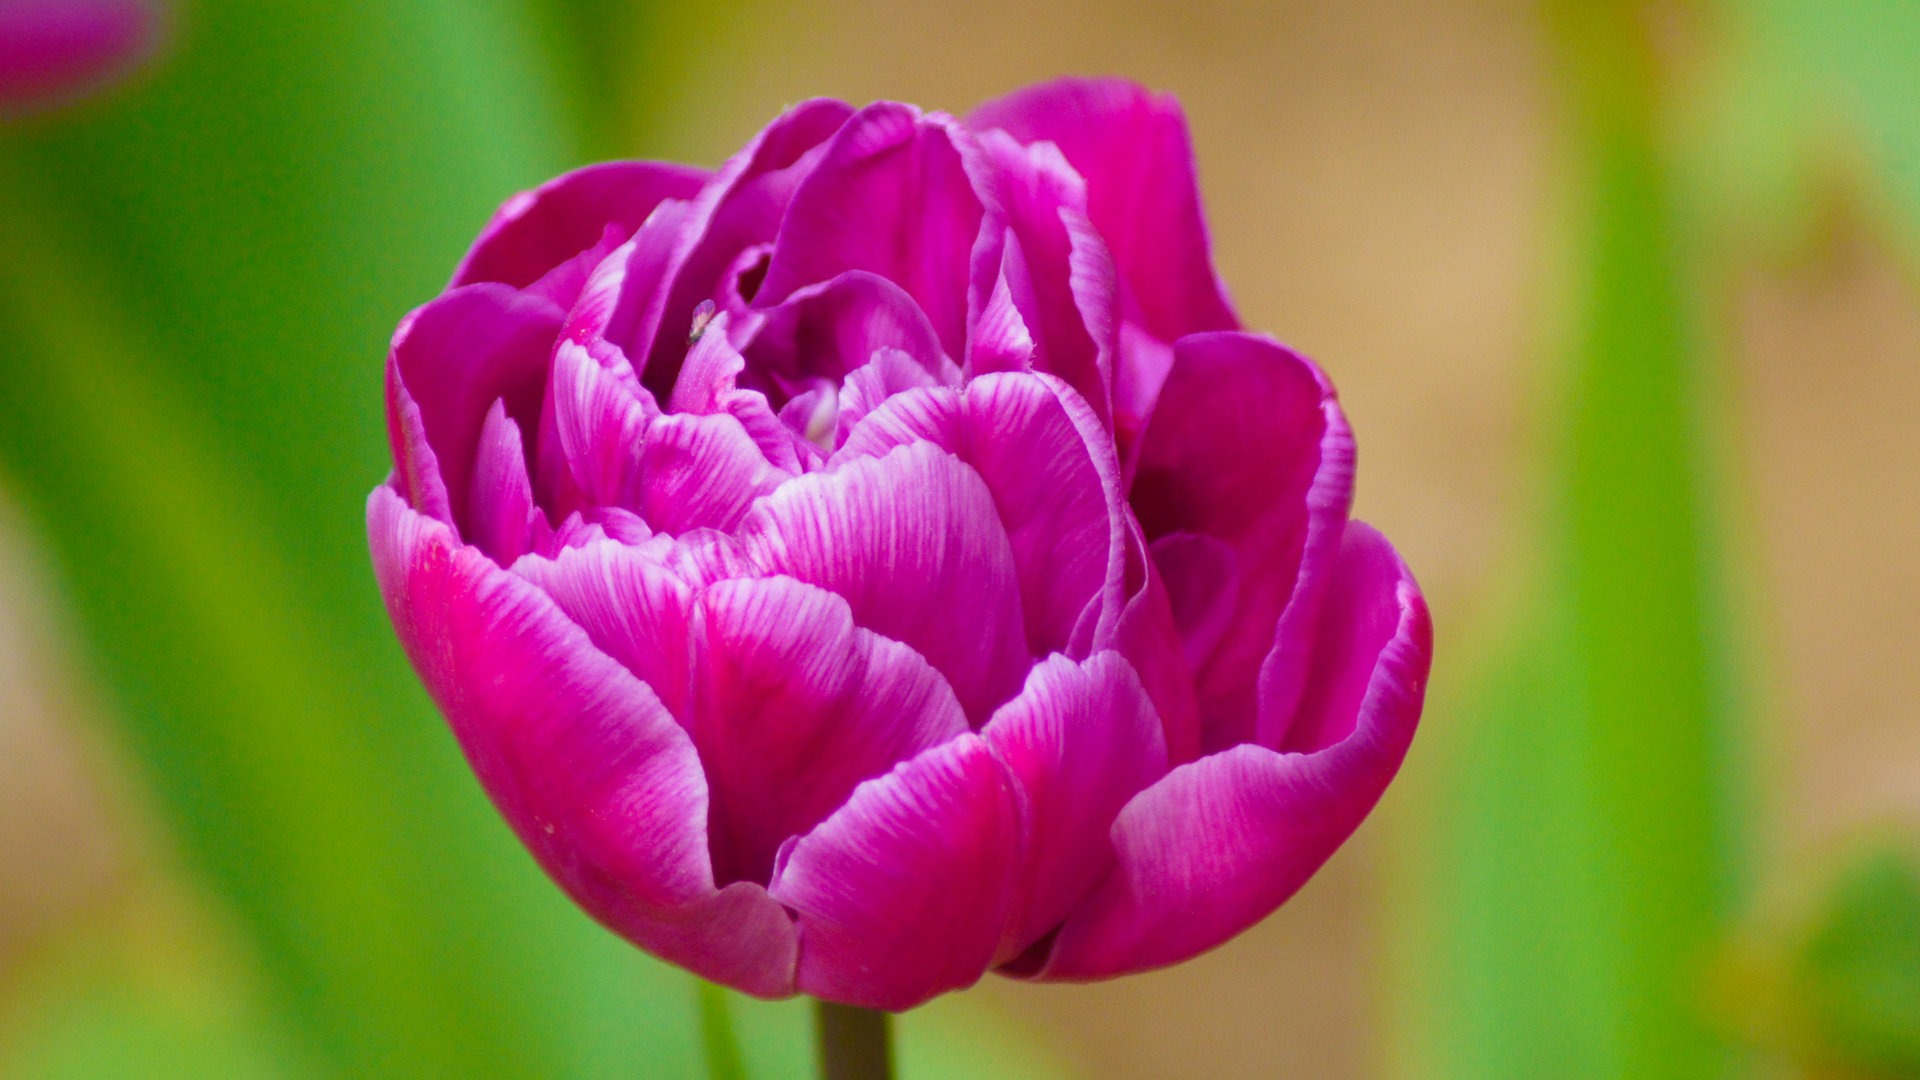 Fondos de pantalla HD de flores tulipanes frescos y coloridos #11 - 1920x1080